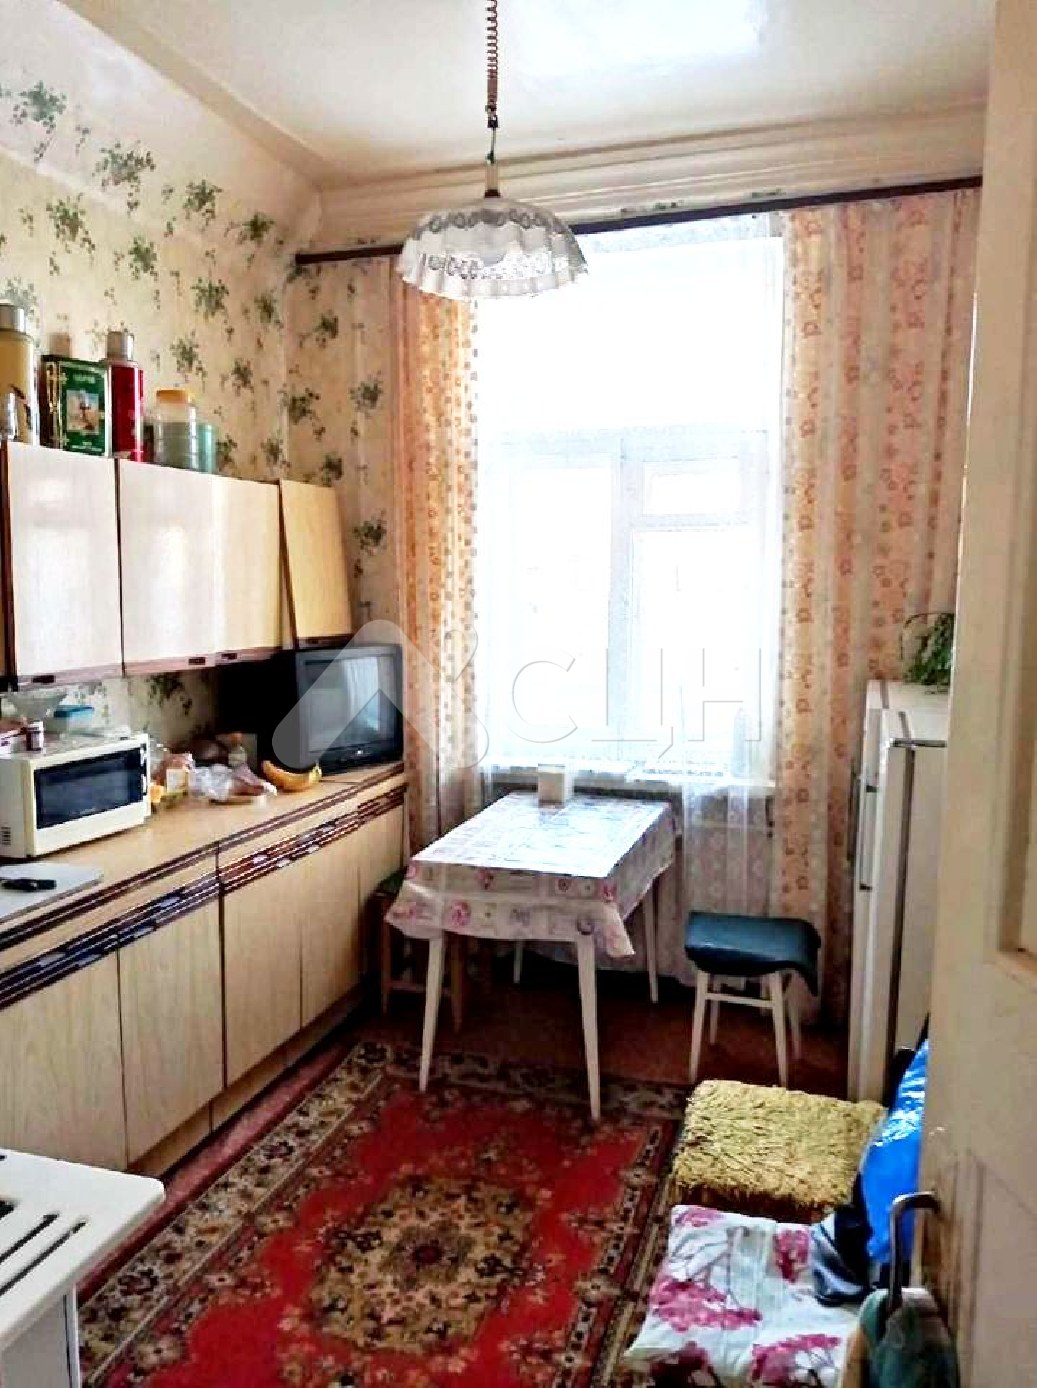 продажа: квартира (2-комн.) по адресу: Саров, улица Ушакова, 18, планировка - сталинка, общая площадь - 60/жилая - 32/кухня - 10, этаж 2 из 3 этажного дома